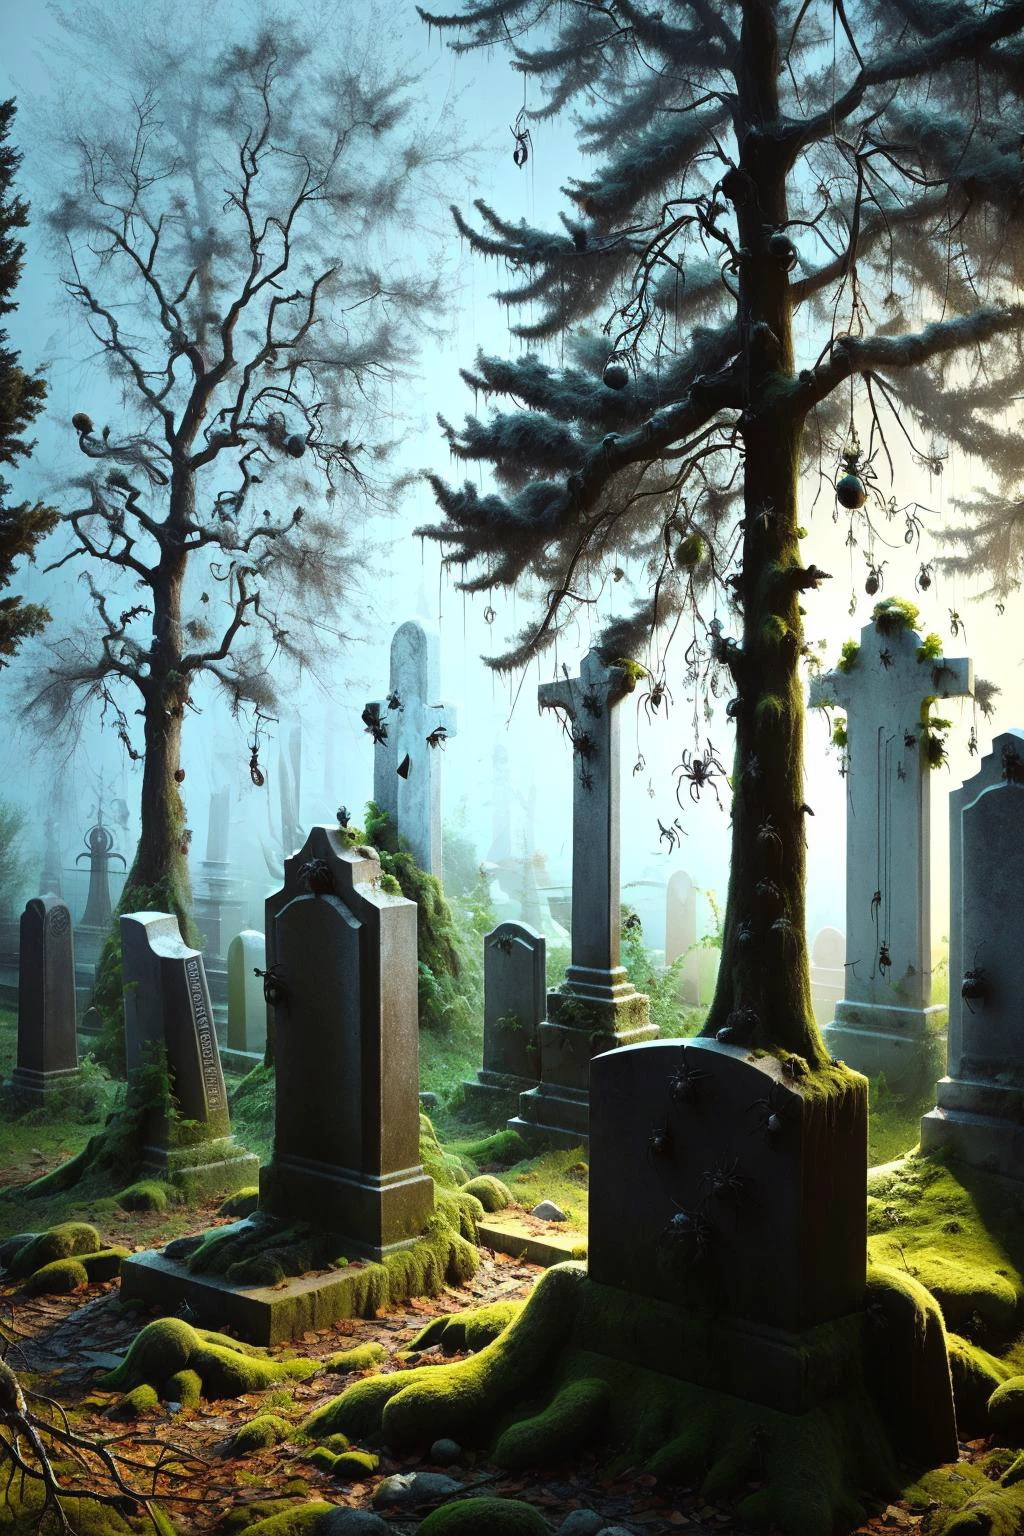 Ein nebliger Friedhof in der Nacht, mit alten Grabsteinen und knorrigen Bäumen, Ais-Spinnen krabbeln über die Gräber und hängen an den Zweigen, Schafft eine schaurige und gespenstische Atmosphäre 